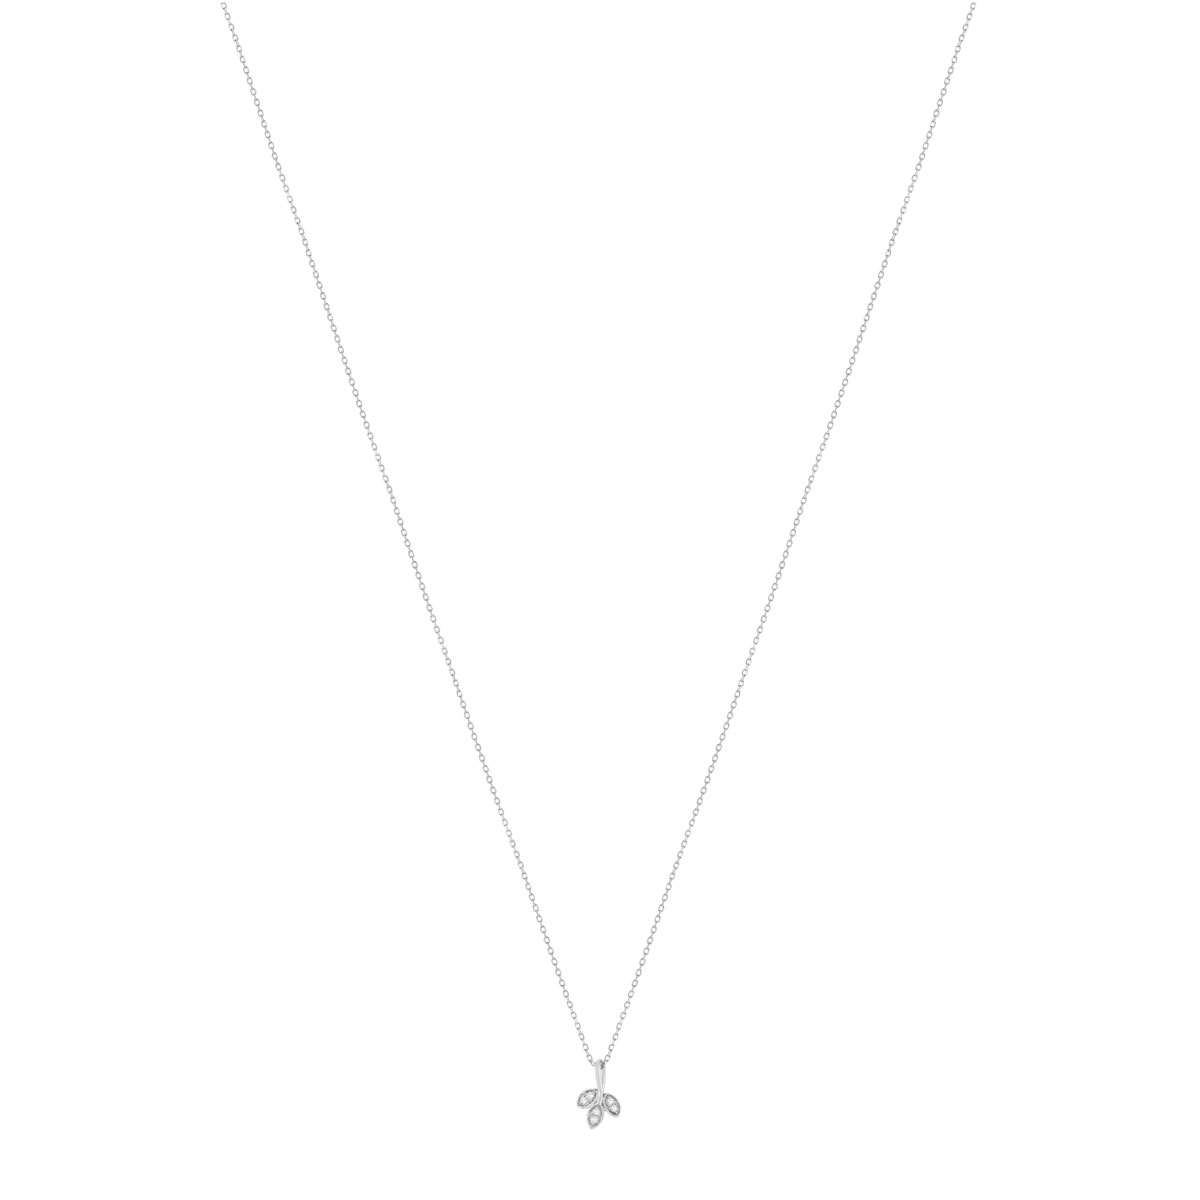 Collier or blanc 375, diamants, motif feuille. Longueur 42 cm. - vue 2